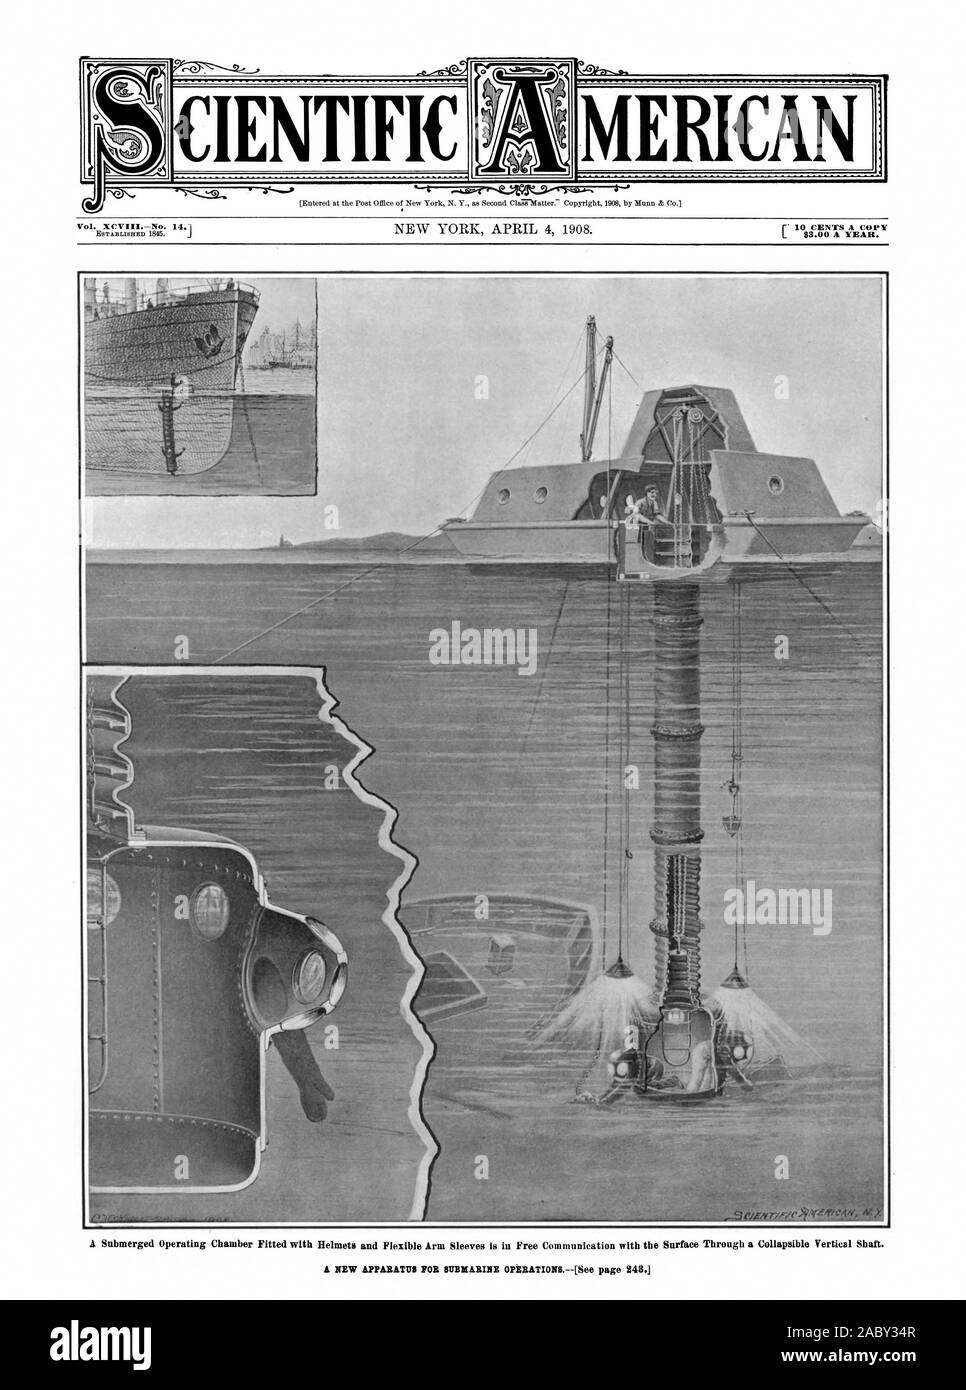 $ 3.00 pro Jahr. Vol.XCVIIINo. 14. Ich WISSENSCHAFTLICHE MERICAN, Scientific American, 1908-04-04, einen neuen Apparat für die u-boot Operationen Stockfoto